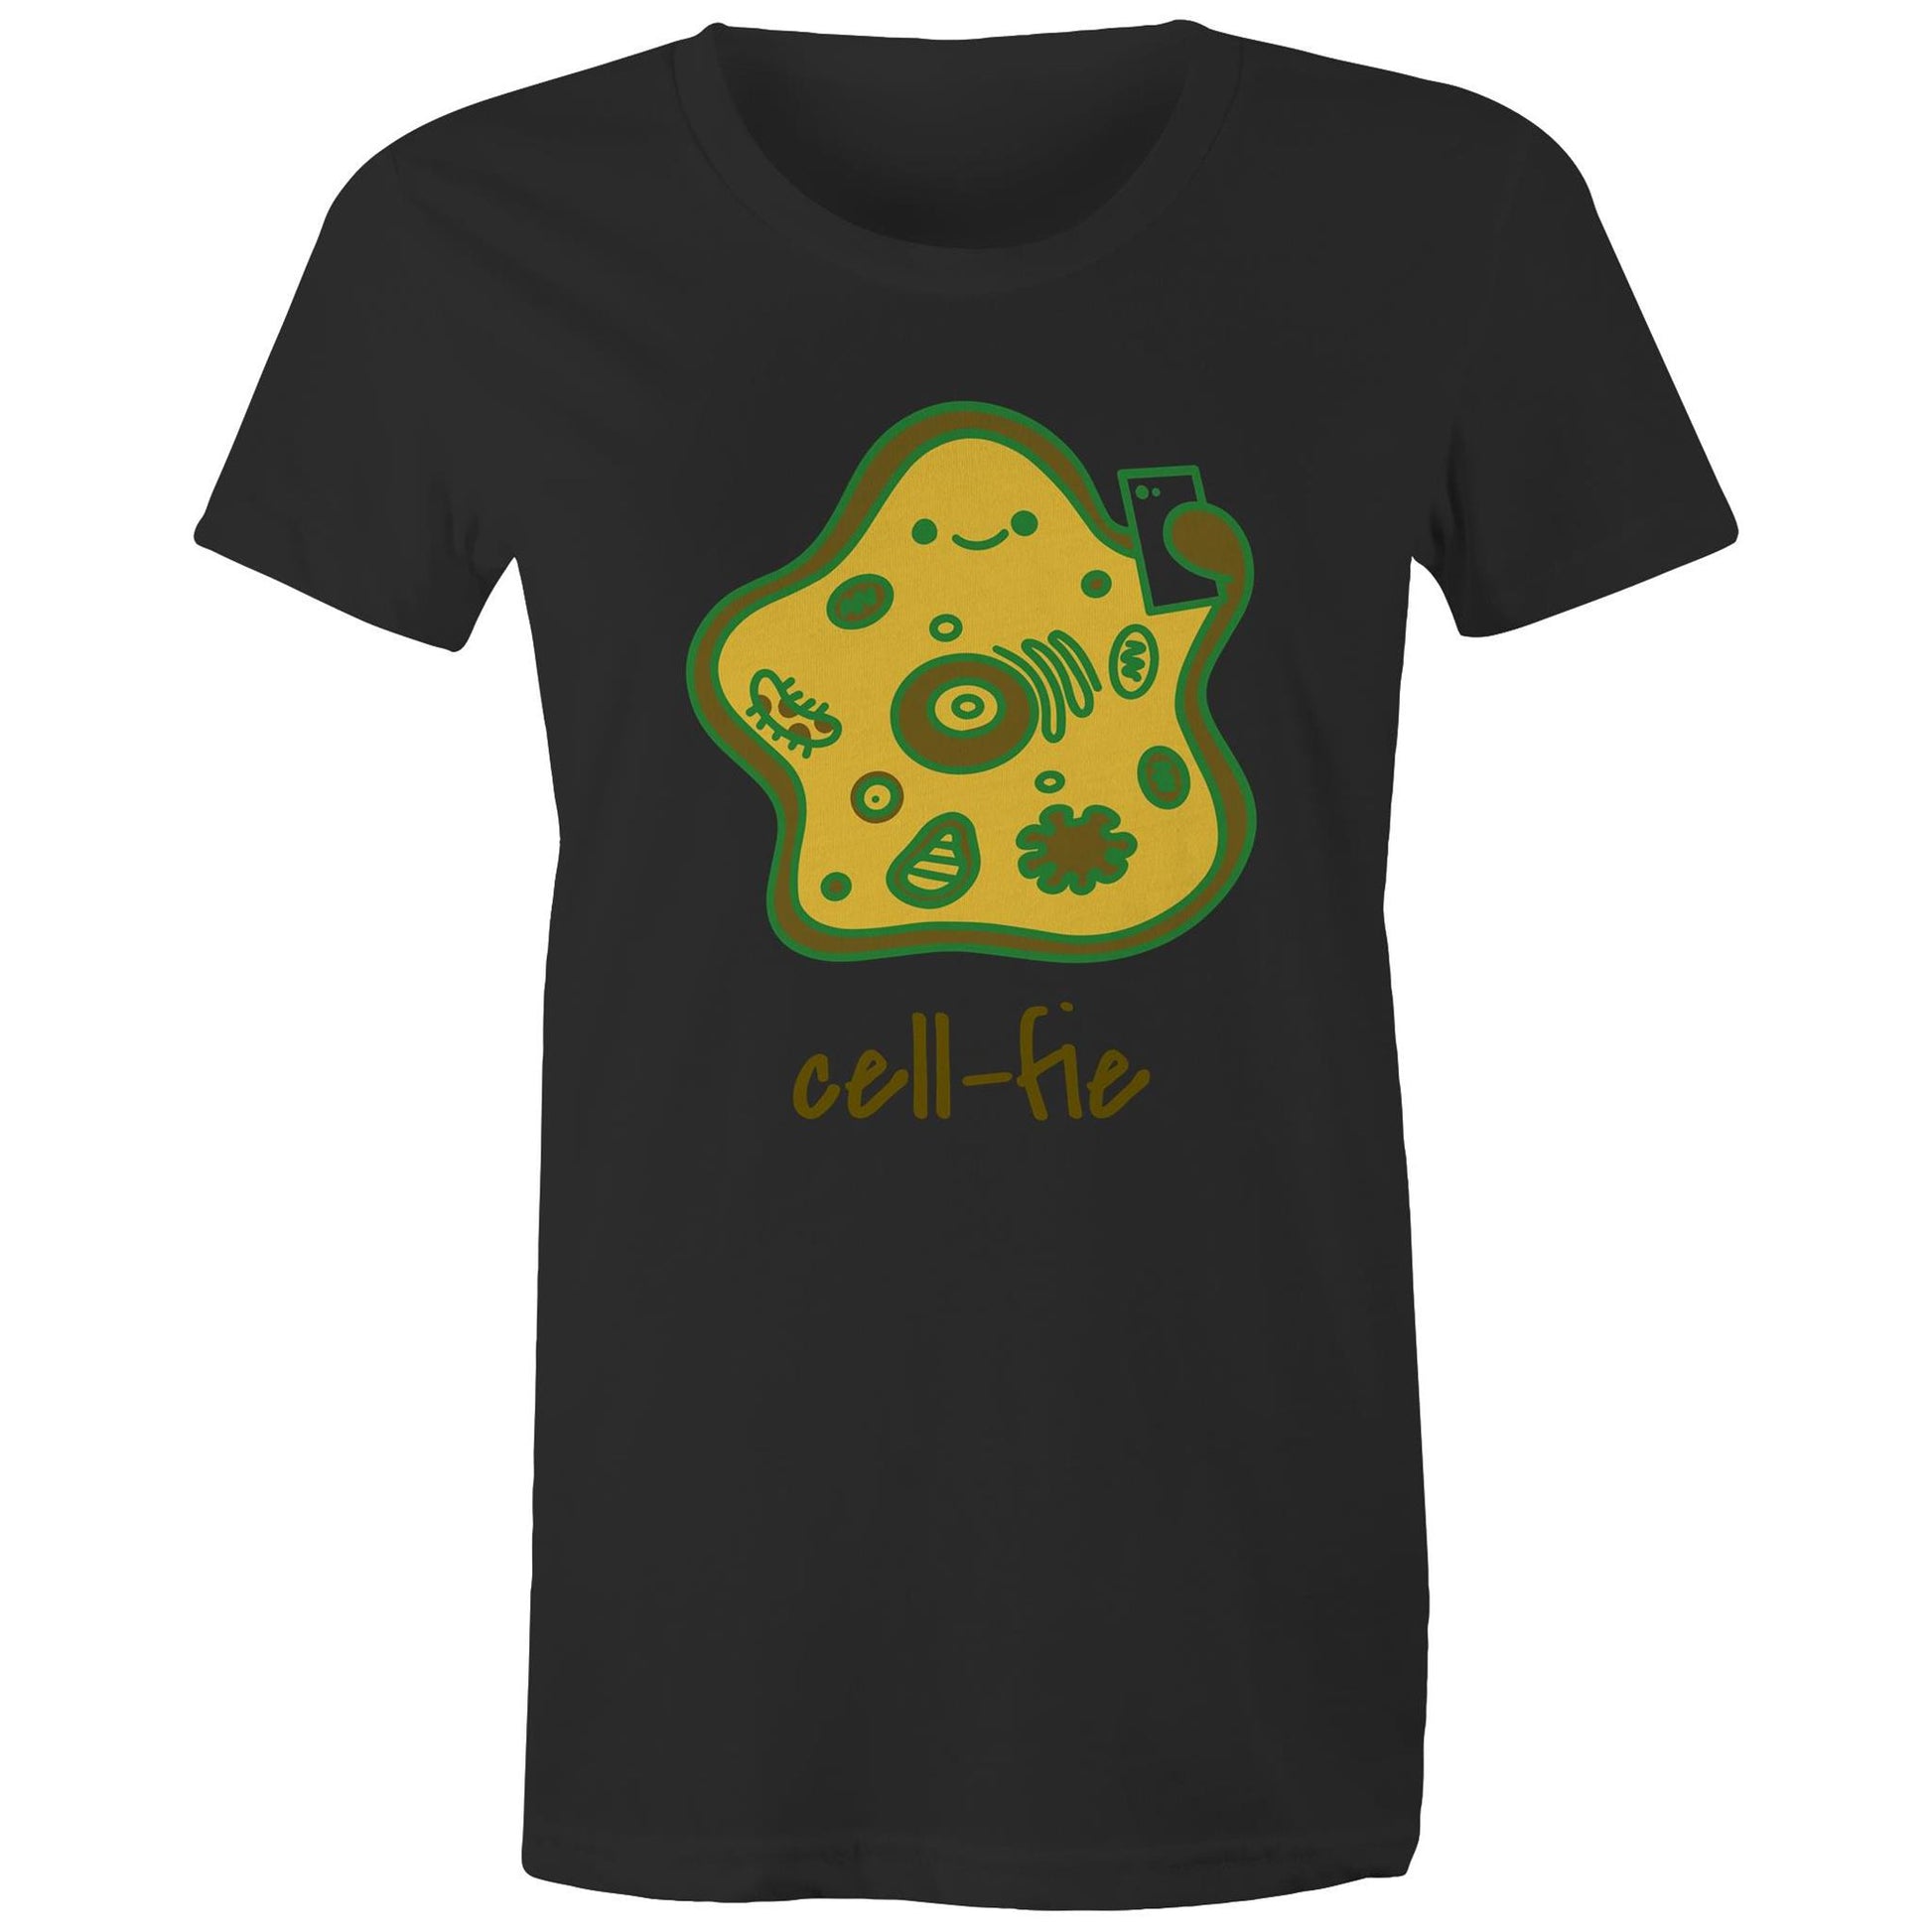 Cell-fie - Womens T-shirt Black Womens T-shirt Science